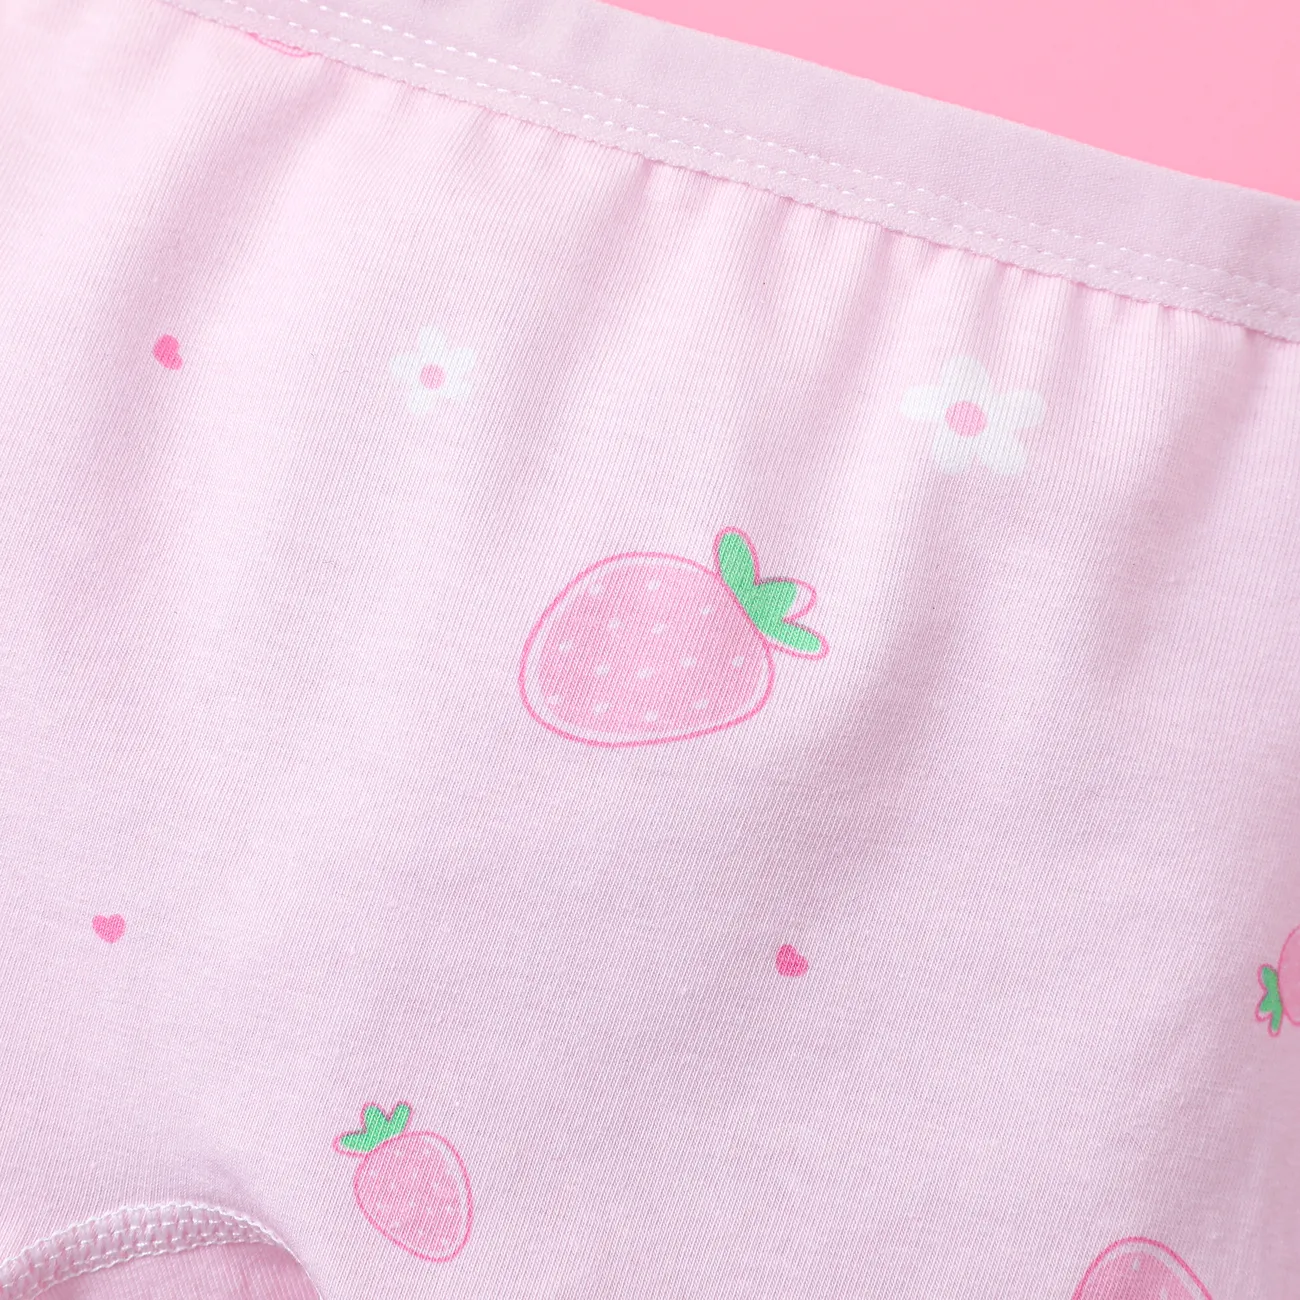 Kindliches Obst und Gemüse 4pcs Baumwolle Enge Unterwäsche für Mädchen rosa big image 1